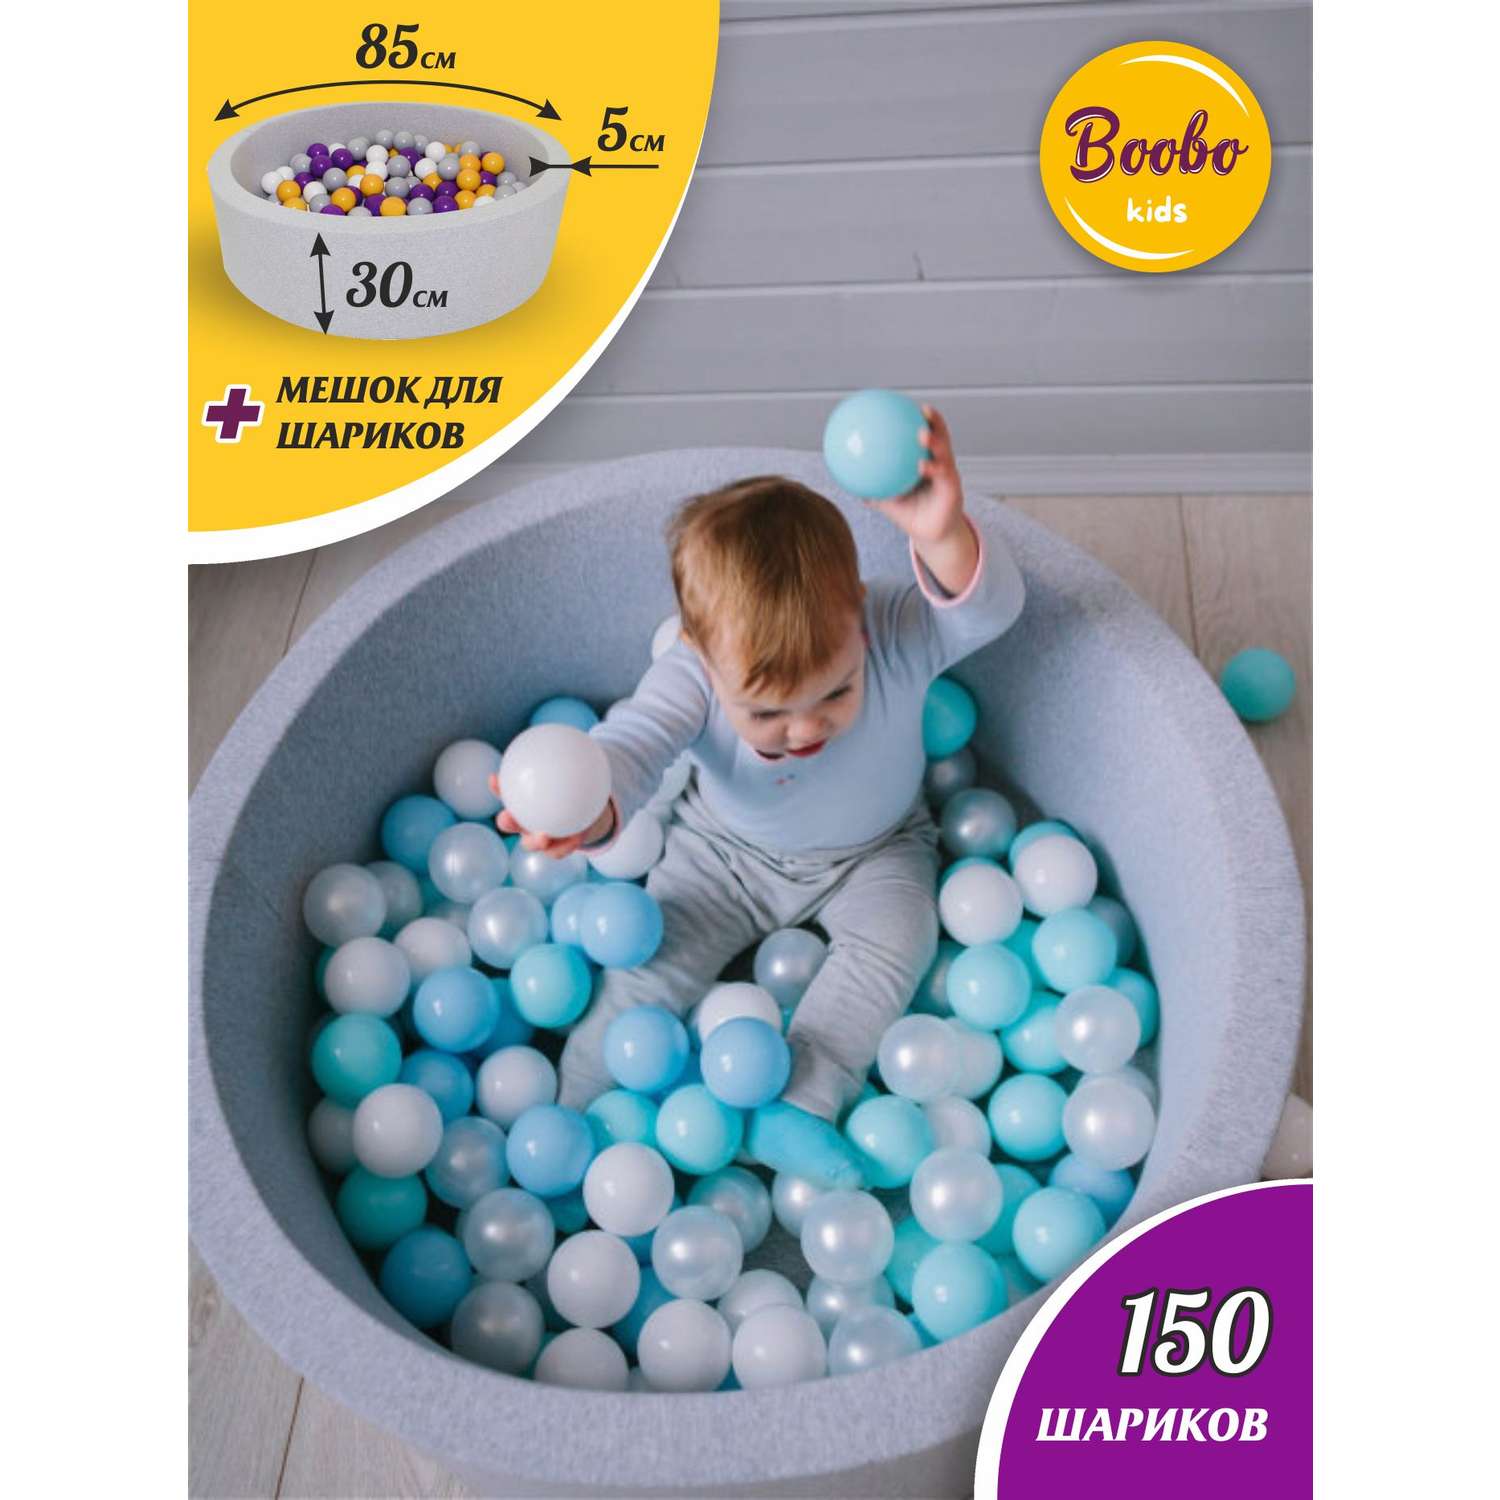 Сухой бассейн — купить в Москве сухие бассейны для детей в kormstroytorg.ru